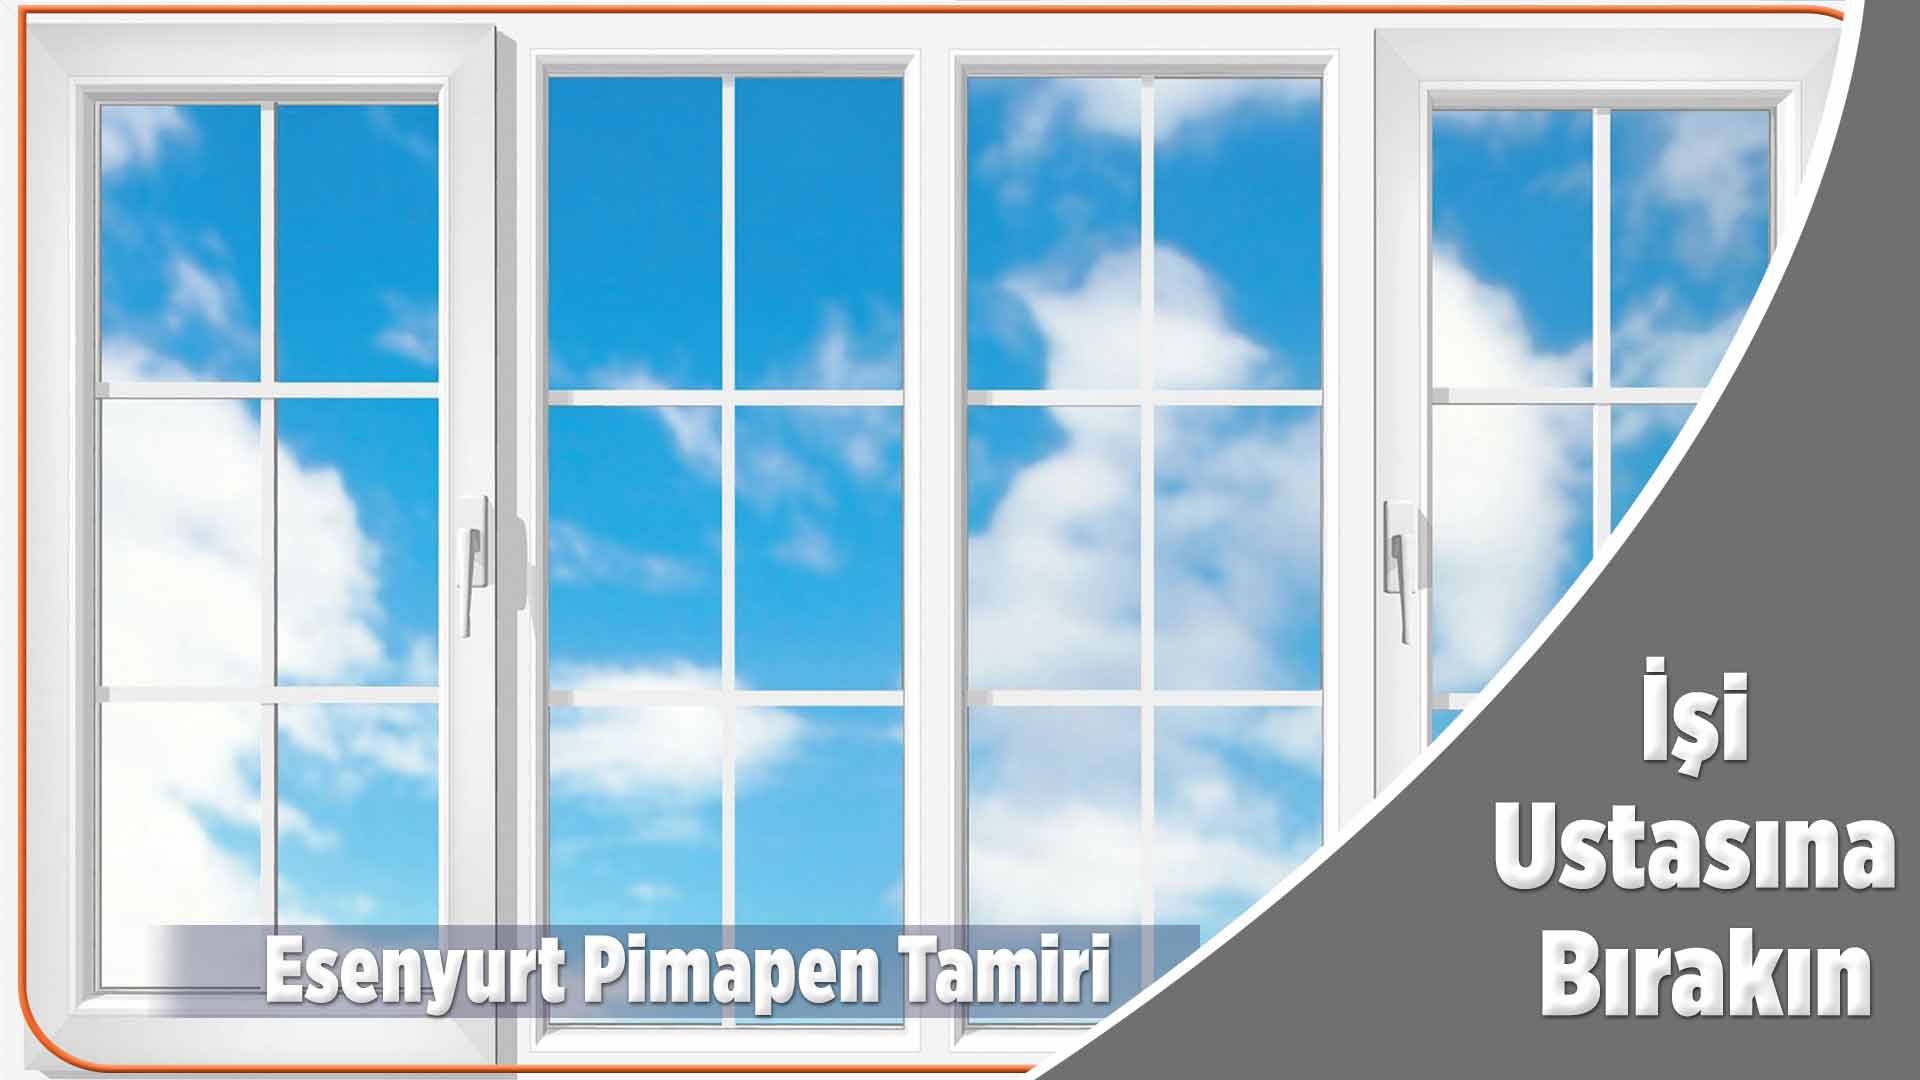 Esenyurt Pimapen Tamiri